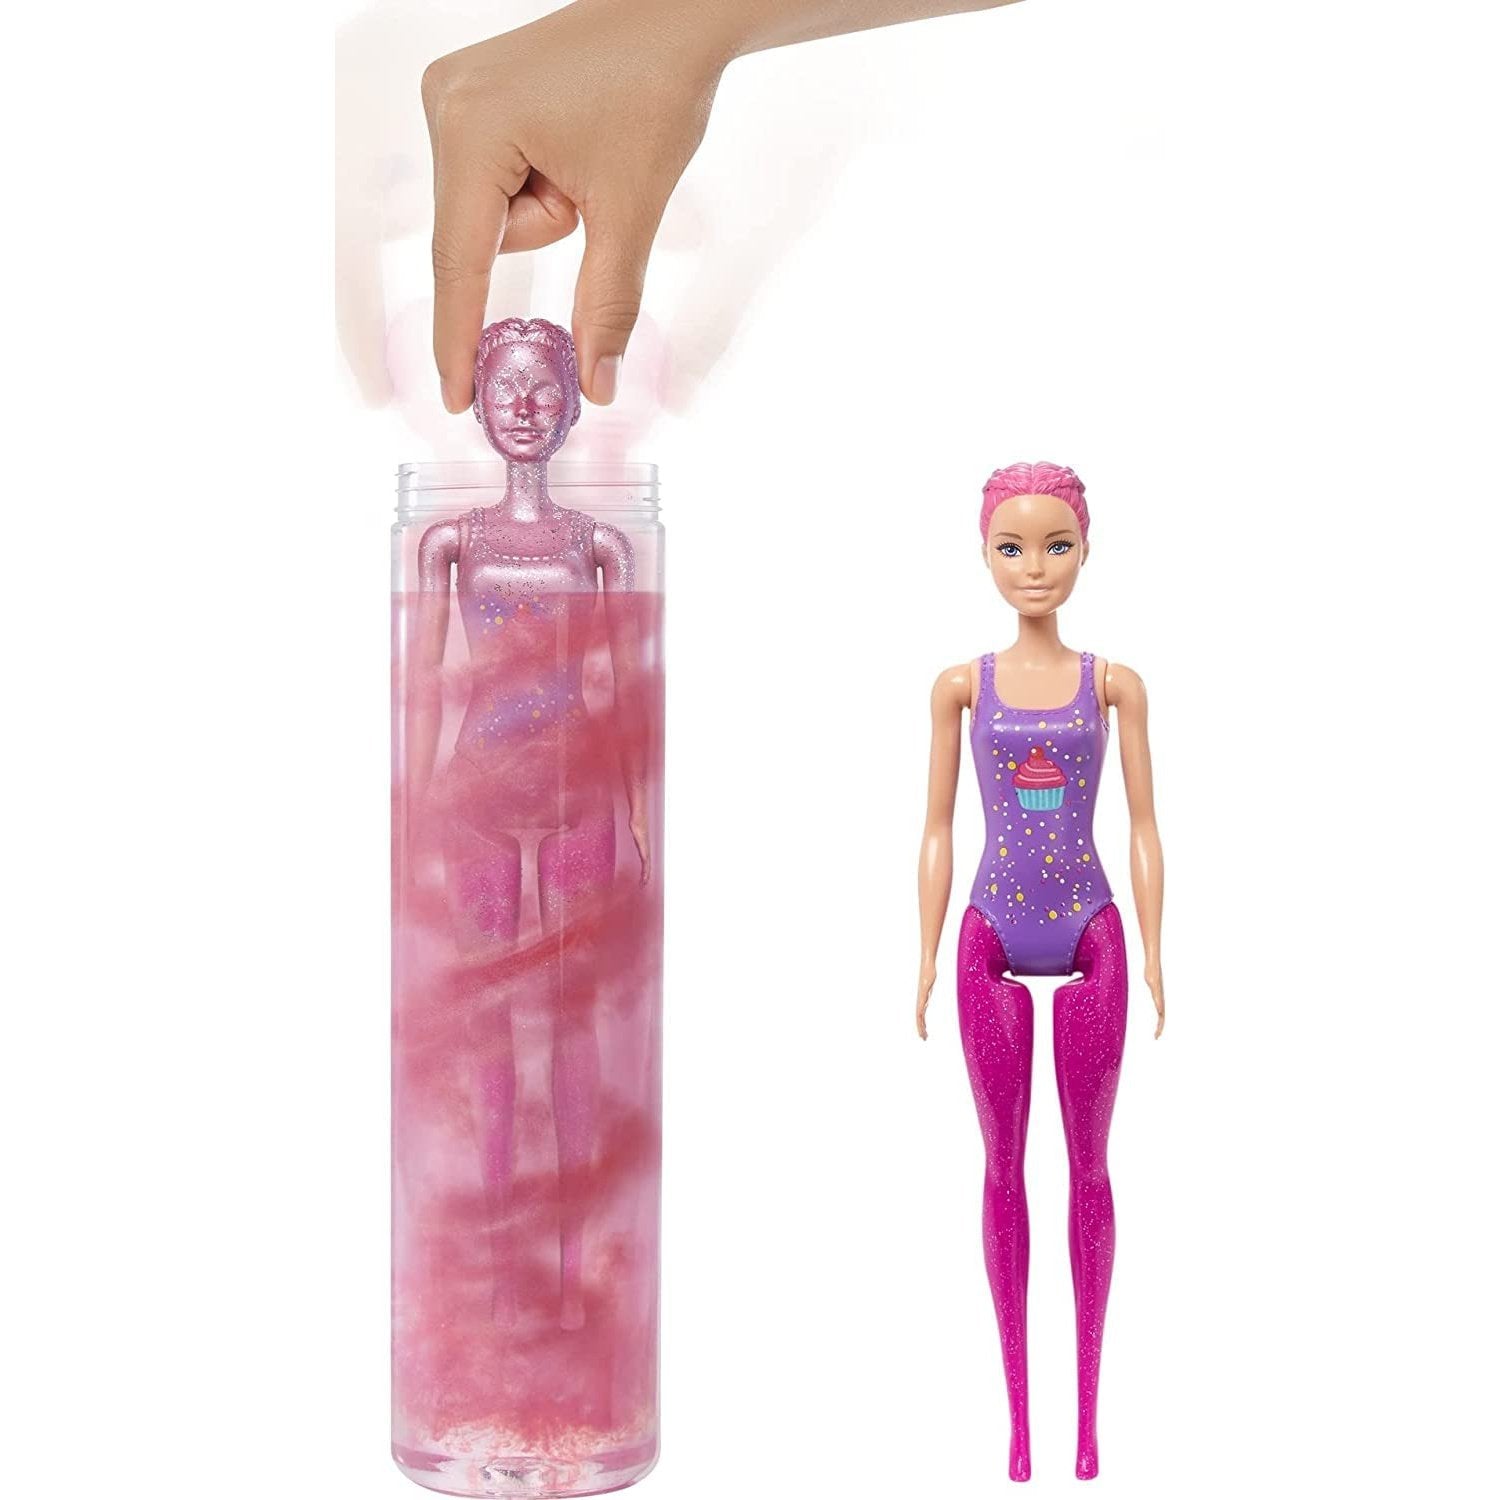 Barbie Color Reveal Glitter Rosa 25 Sopresas